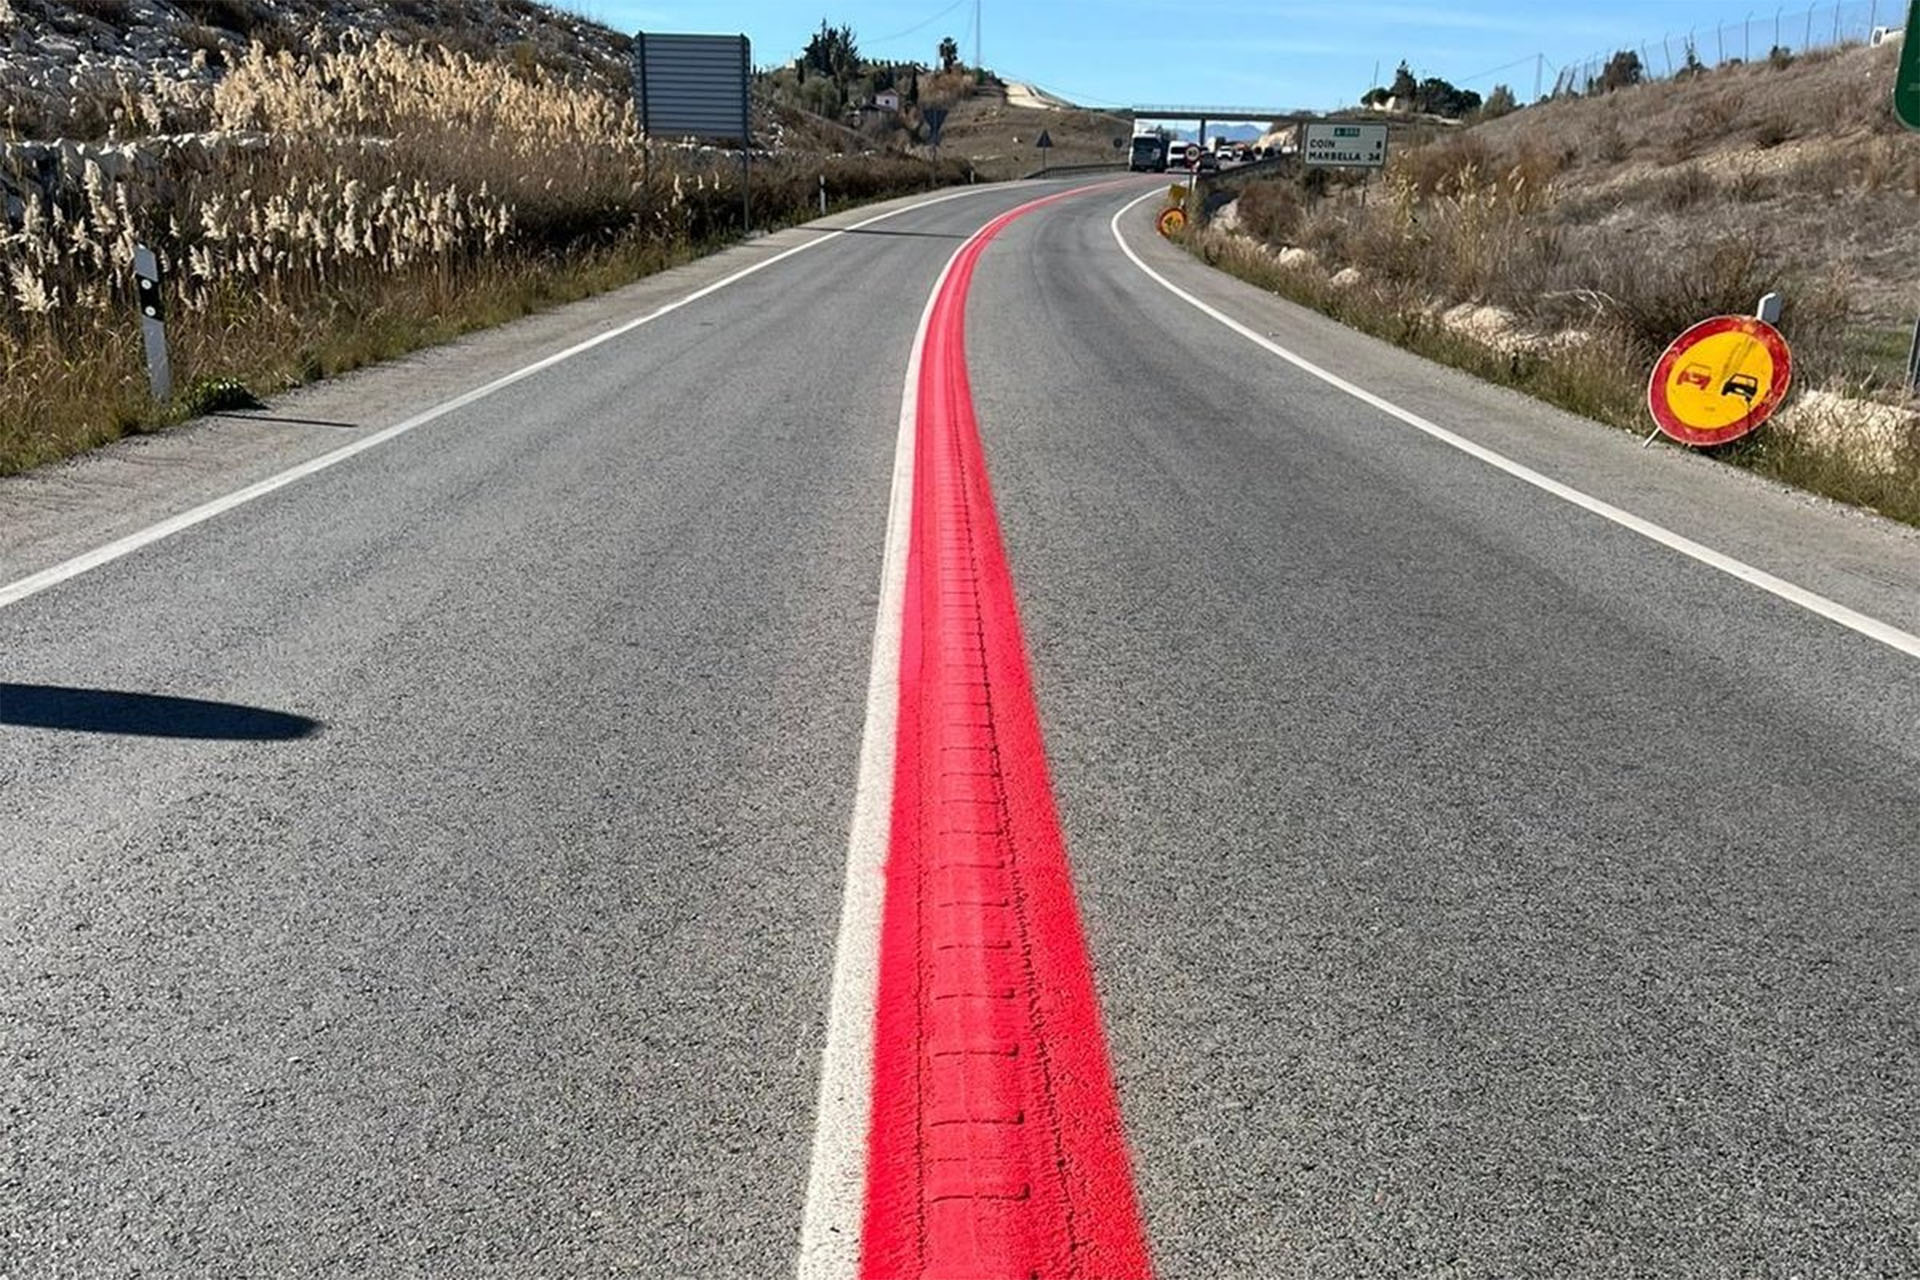 ¿Has visto esta línea roja en la carretera? ¿Sabes lo que significa?